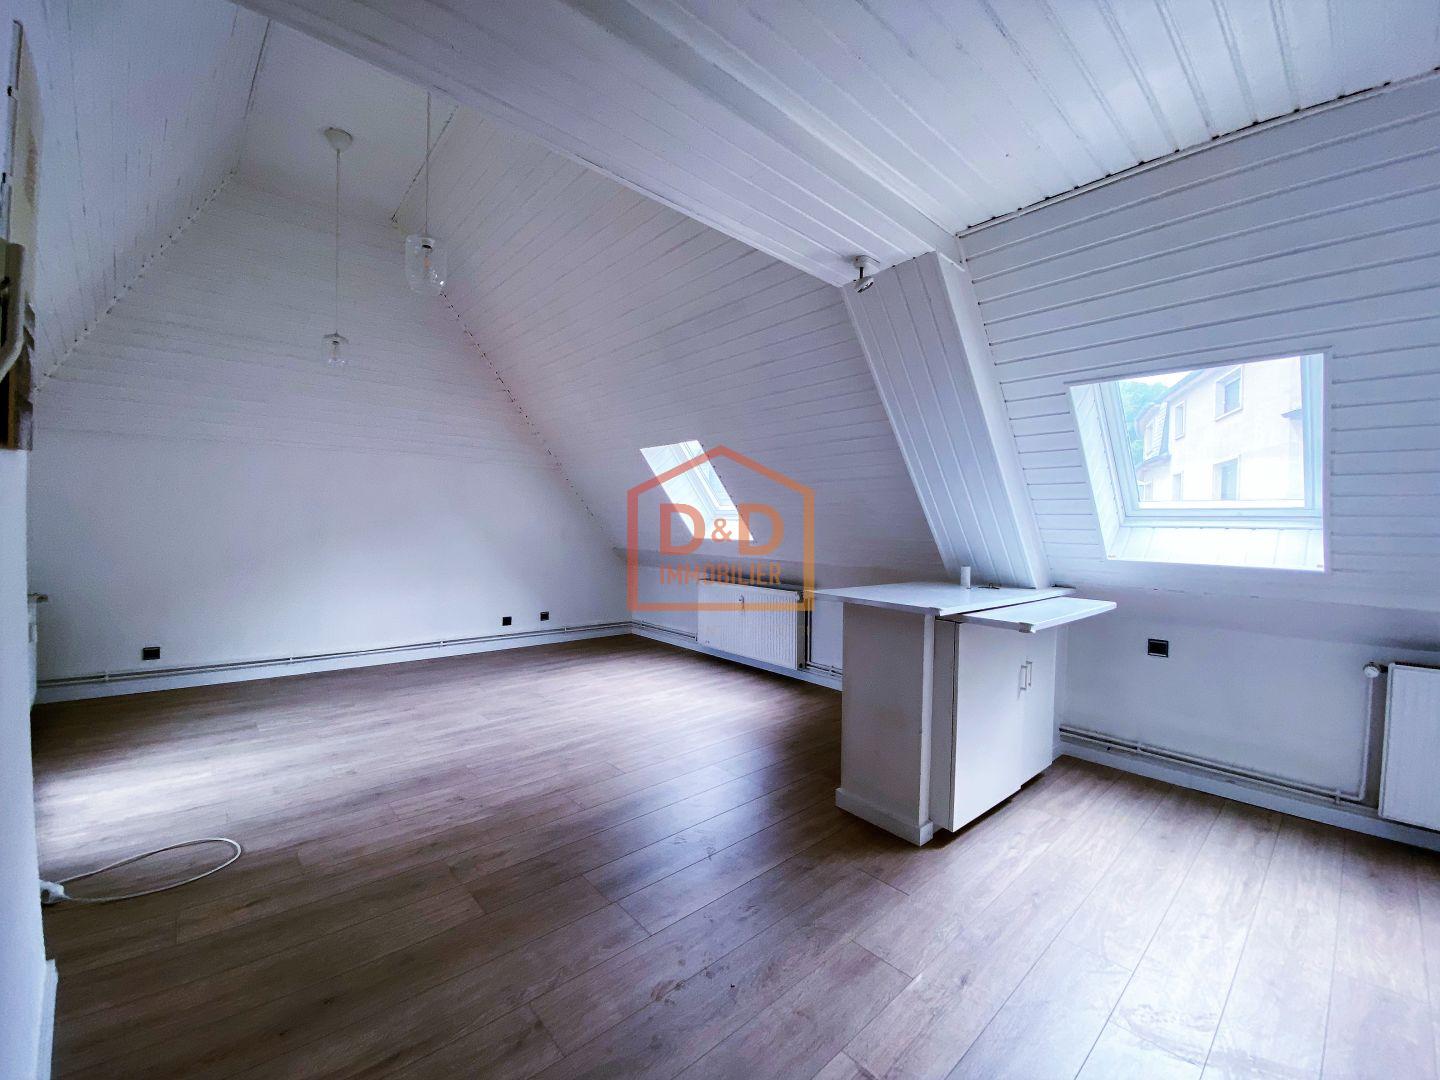 Appartement à Schifflange, 80 m², 2 chambres, 1 400 €/mois